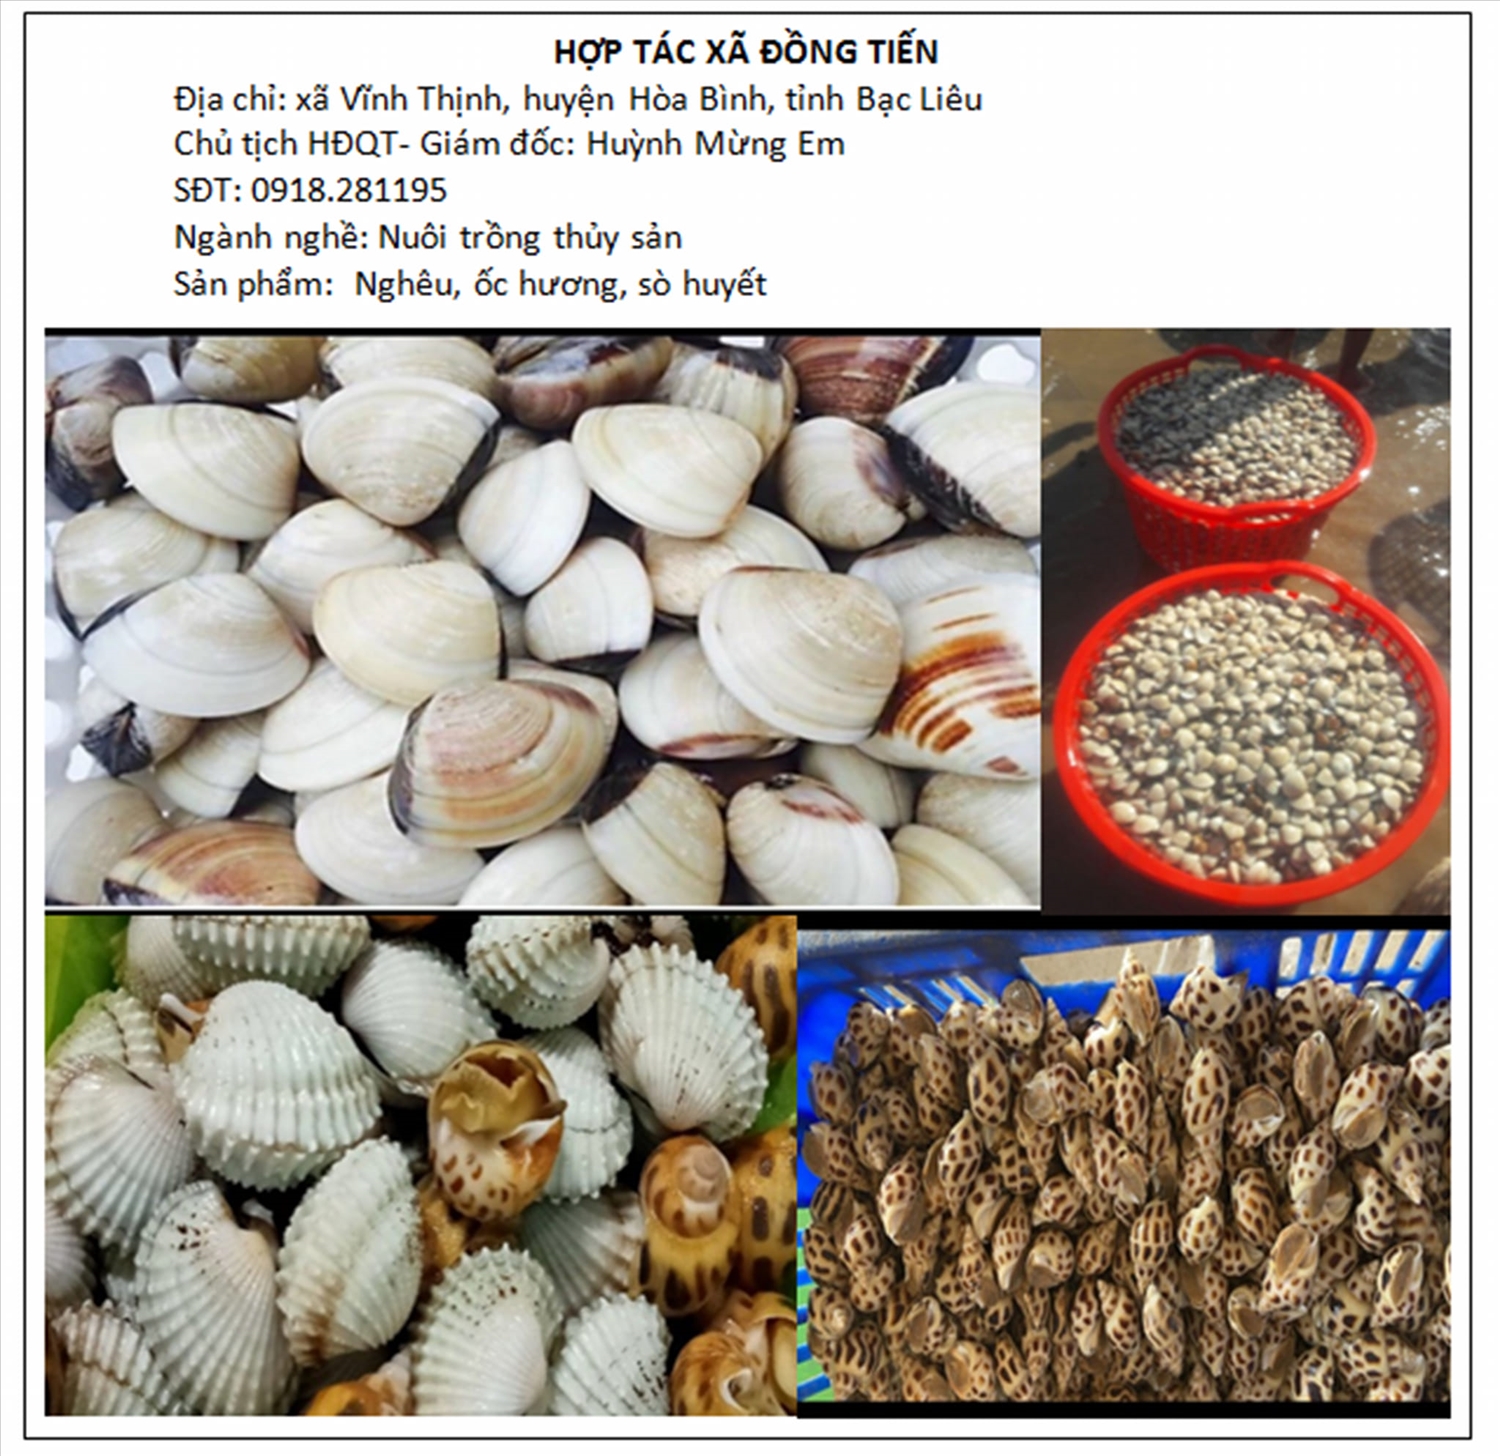 Sản phẩm ngêu, sò, ốc hương của HTX Đồng Tiến được giới thiệu trên trang mạng xã hội của Liên minh HTX tỉnh Bạc Liêu